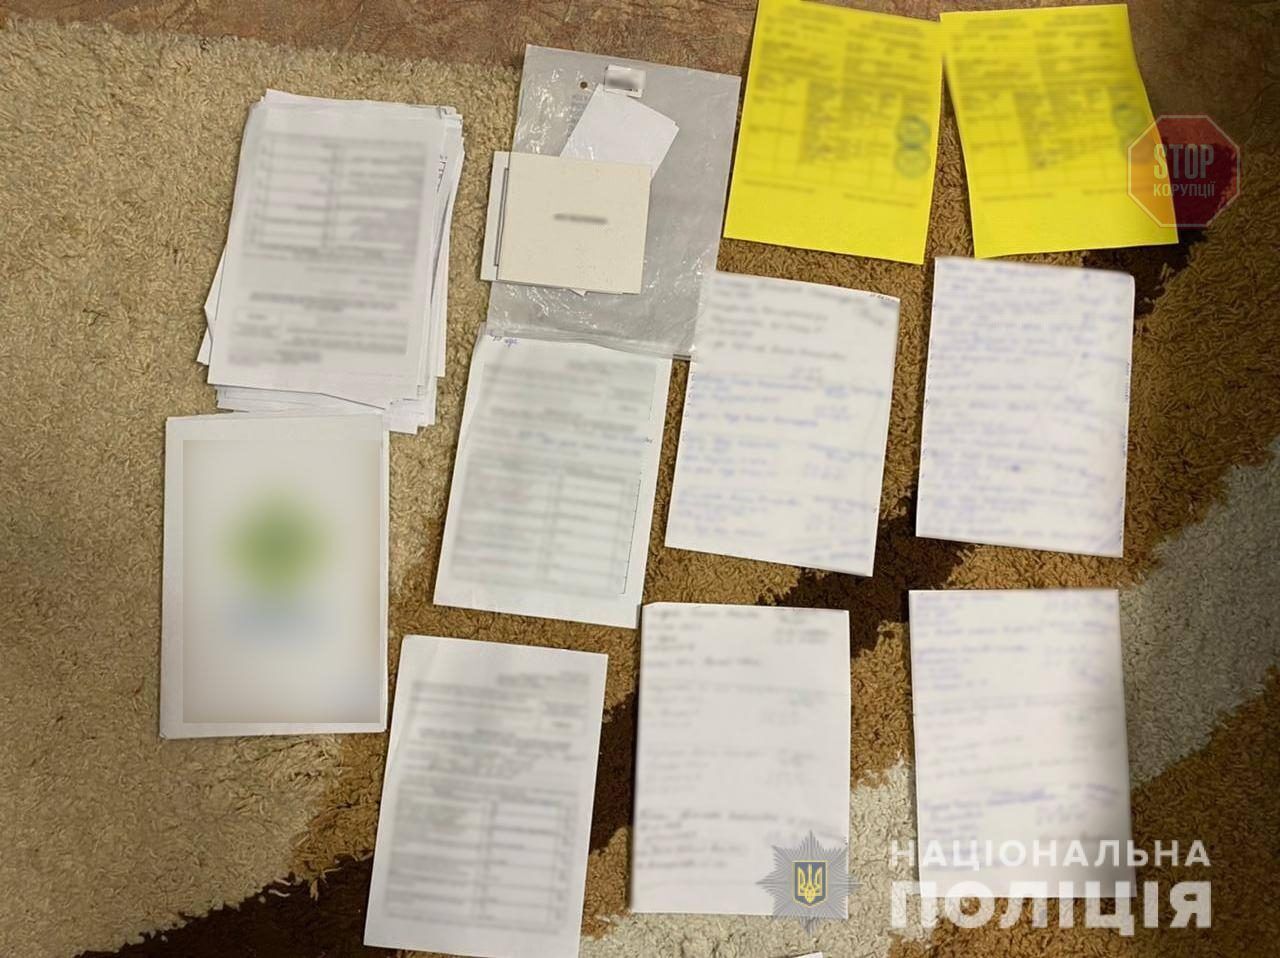  Поліція Одеси викрила схему підроблення ковід-сертифікатів Фото: Нацполіція